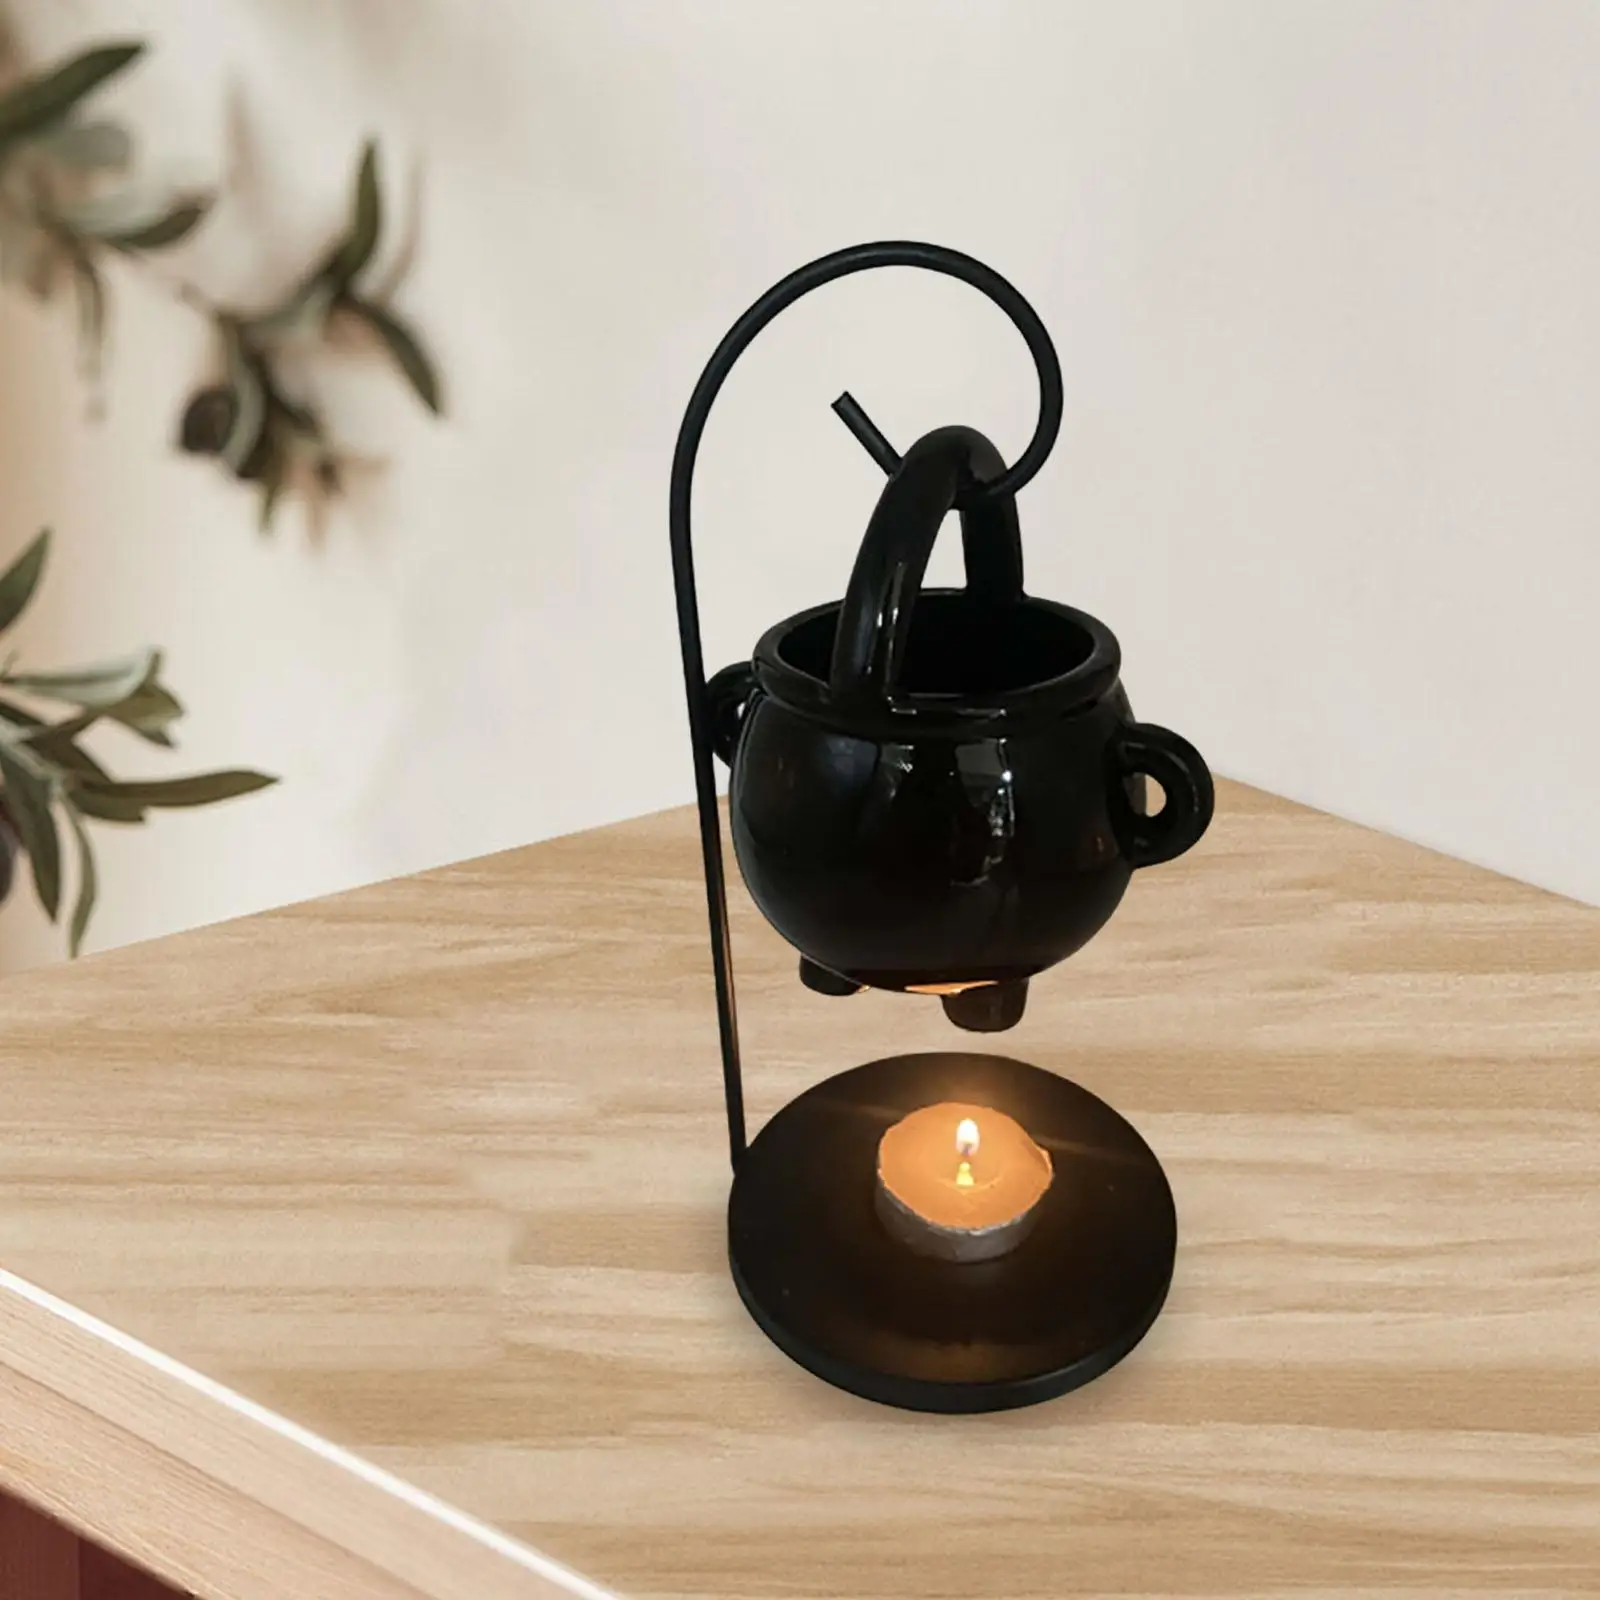 Ceramic Essential Oil Burner Melt Warmer Living Room Tealight Candles Holder for Spa Meditation Yoga Parlor Bedroom Home Decor images - 6